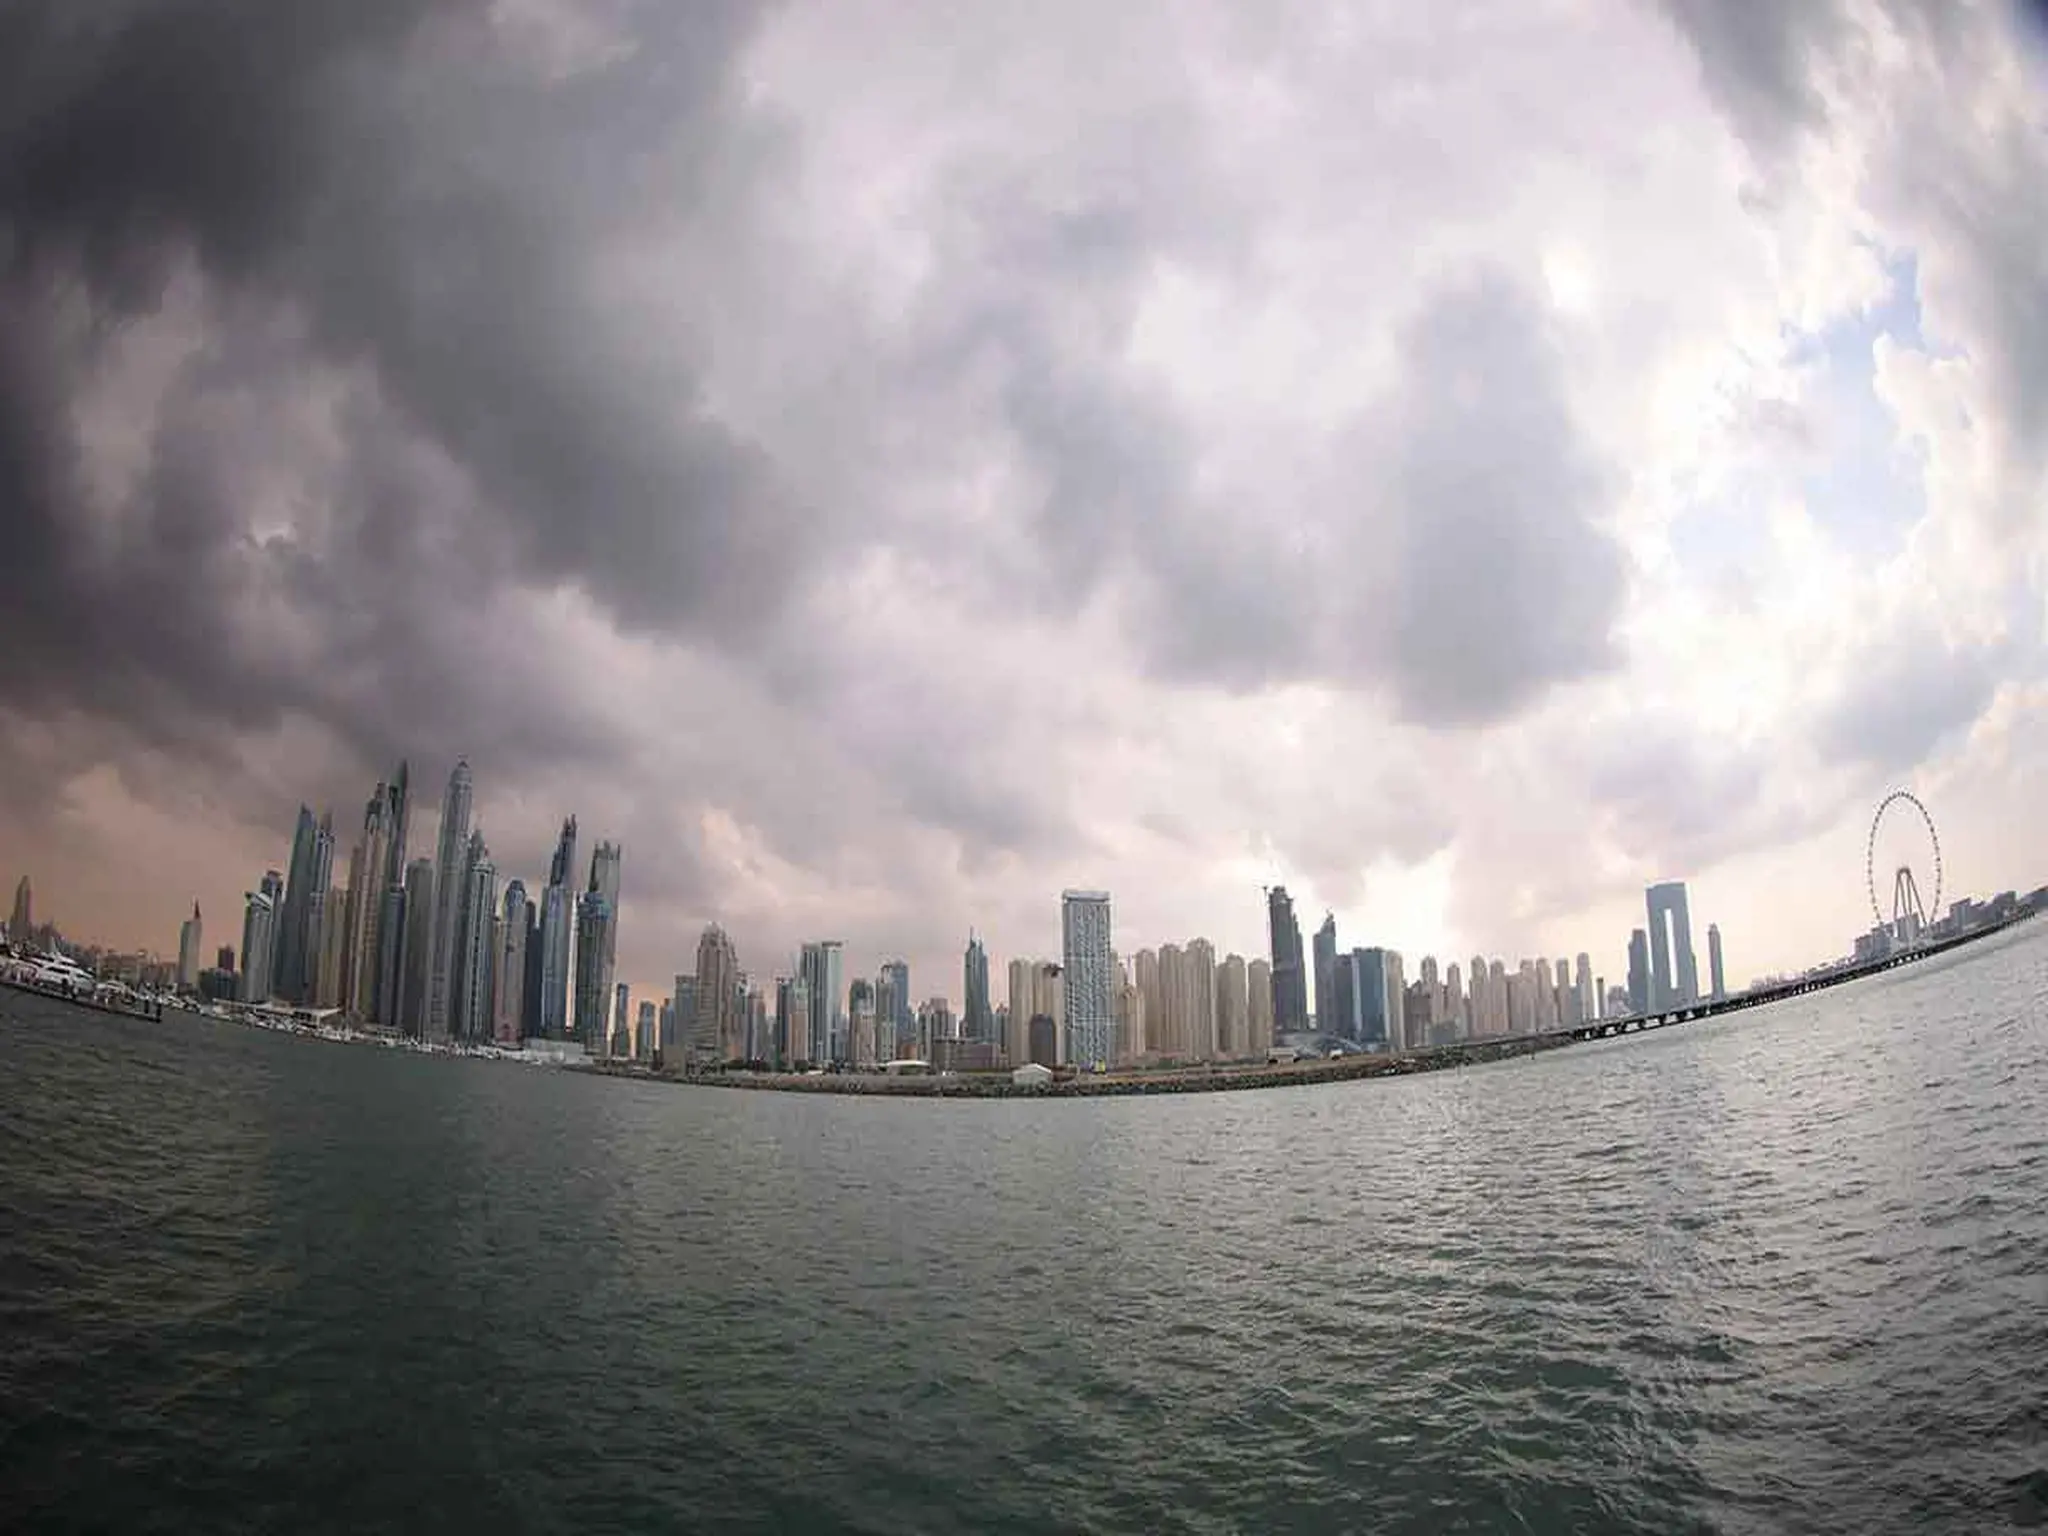 المركز الوطني للأرصاد يحذر من هطول أمطار وانخفاض درجات الحرارة في الإمارات